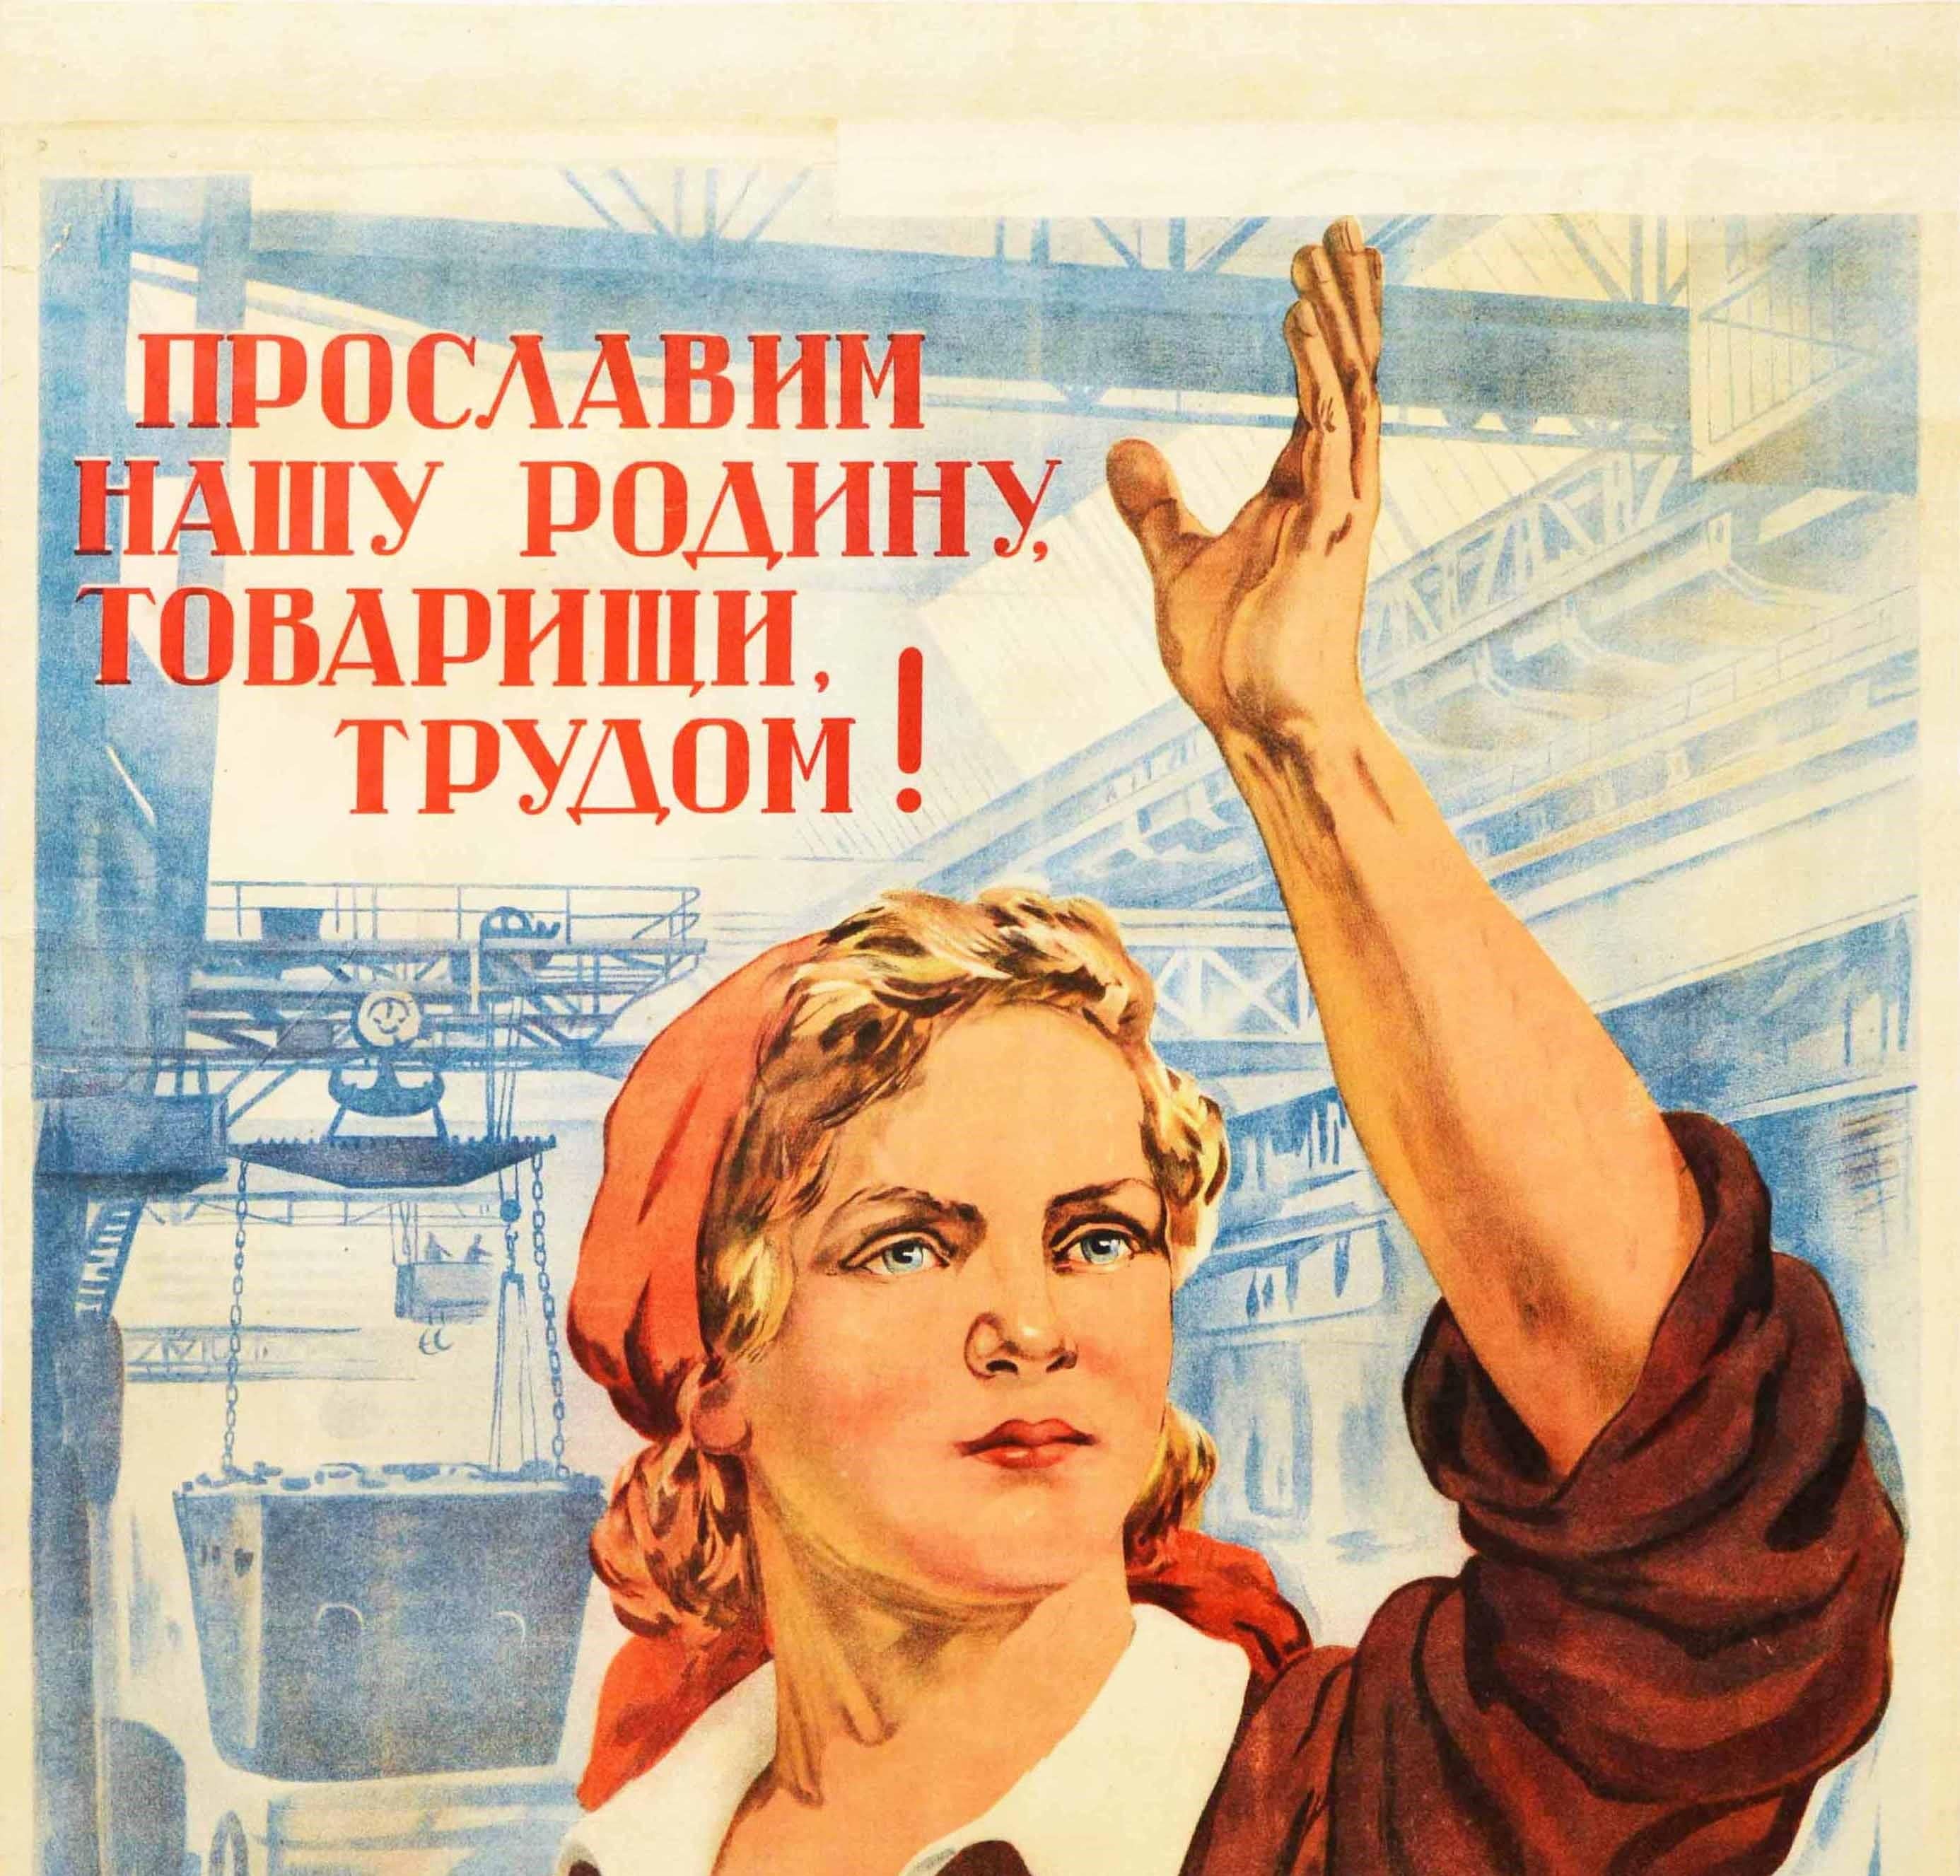 Affiche de propagande soviétique vintage originale - Glorifions notre patrie, camarades, par le travail ! / ? ???????? ? ??? ? ?????, ? ???????, ? ?????! - représentant une jeune femme blonde en tablier et foulard tenant une main en l'air et l'autre